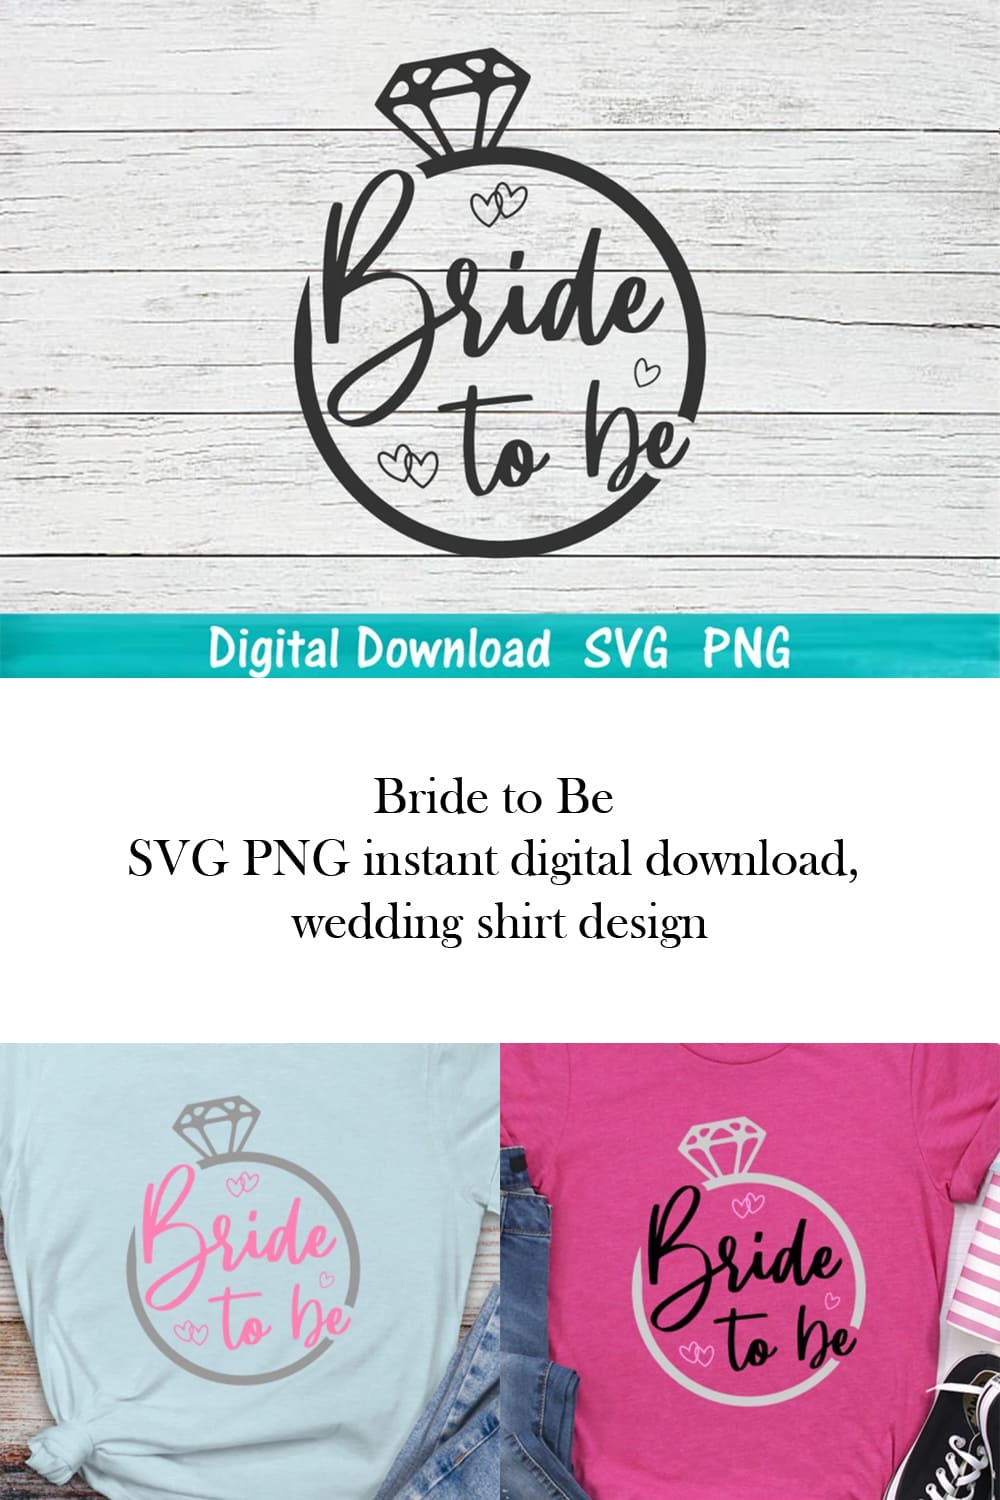 Bride SVG Instant Digital Download pinterest image.